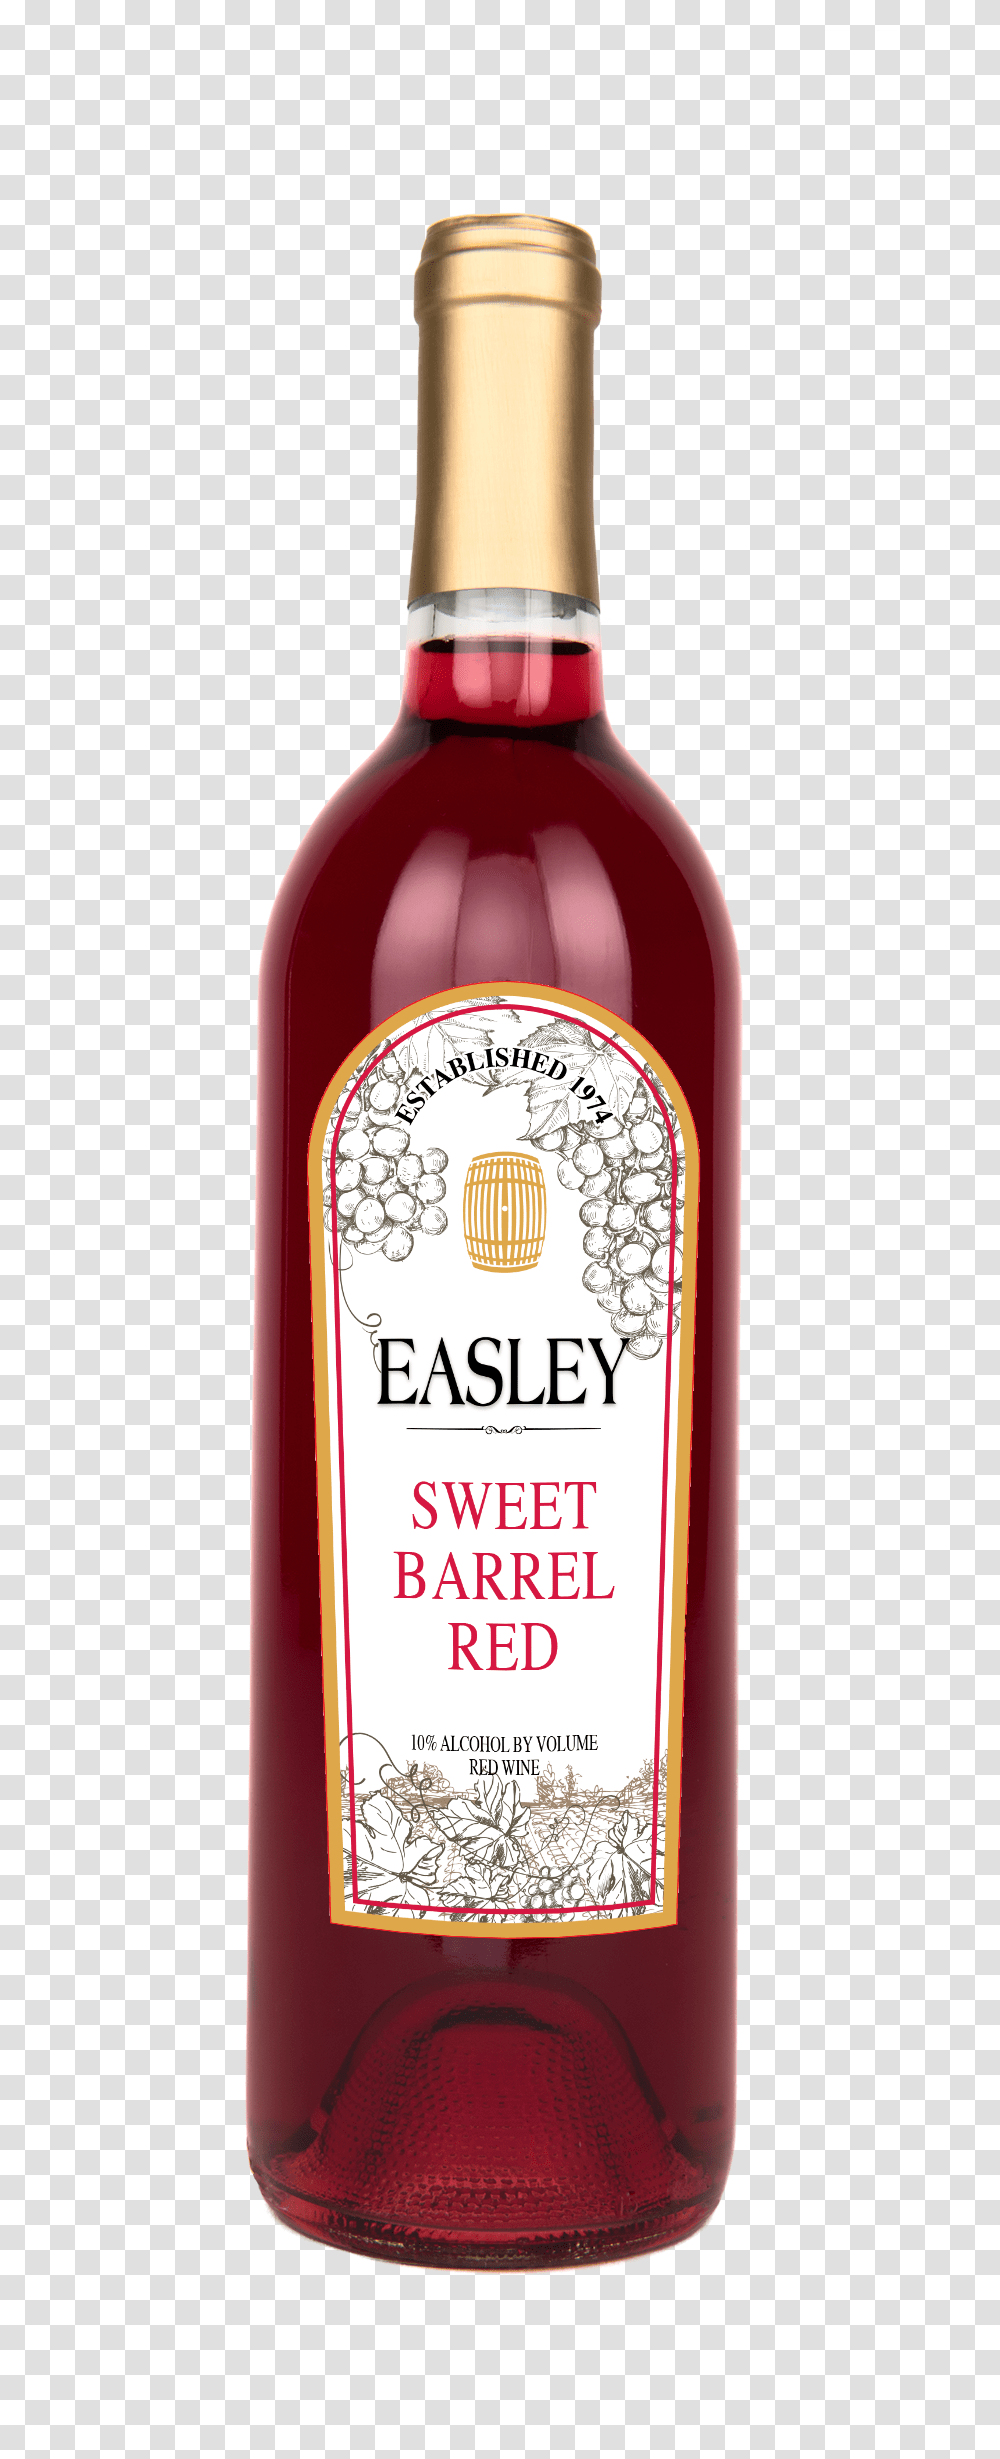 Sweet Barrel Red Glass Bottle, Alcohol, Beverage, Liquor, Label Transparent Png